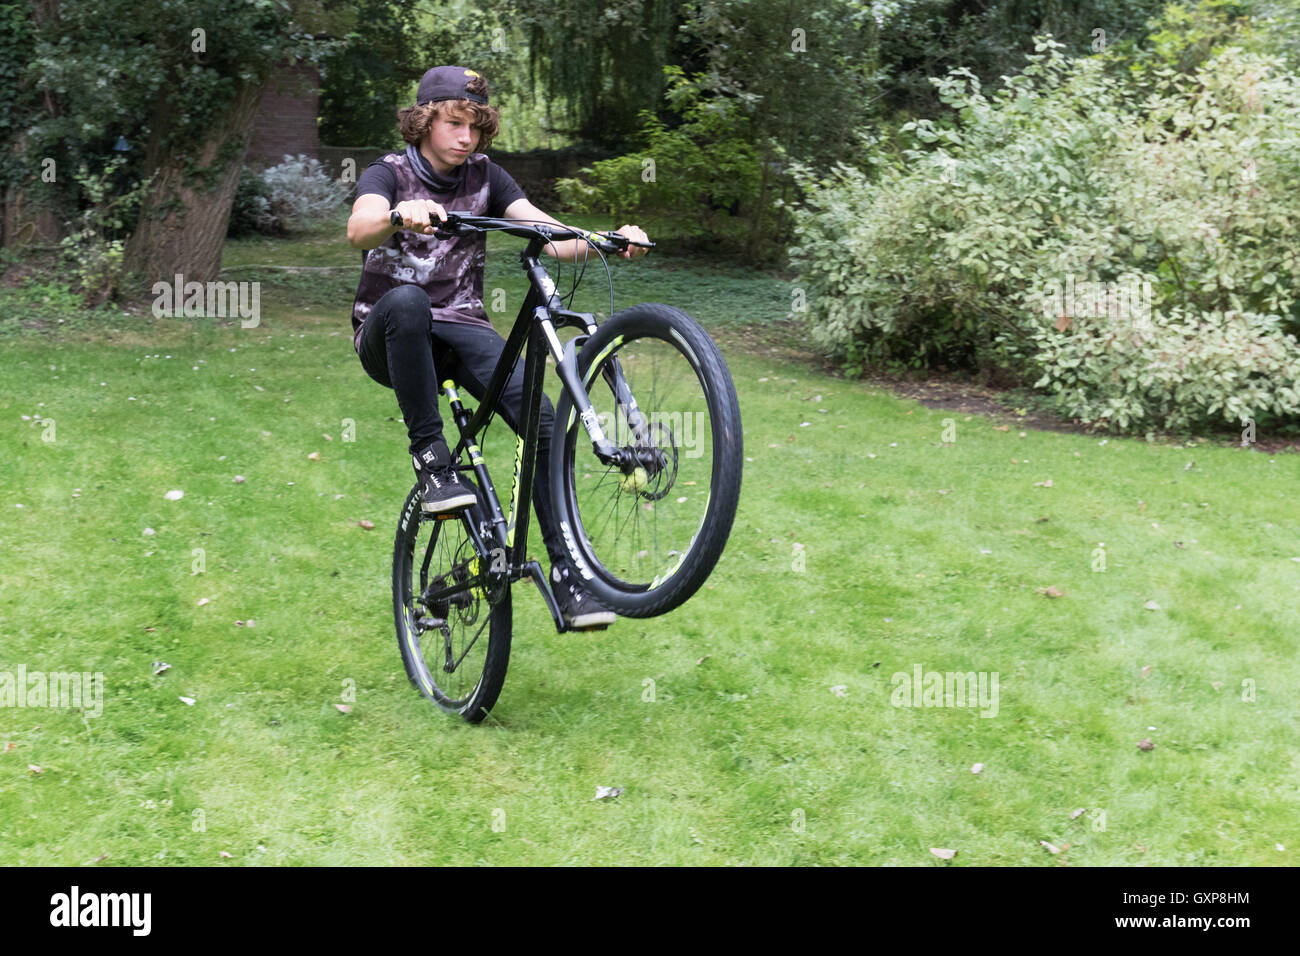 Adolescente haciendo un caballito en su bicicleta, Berkshire Reino Unido Foto de stock